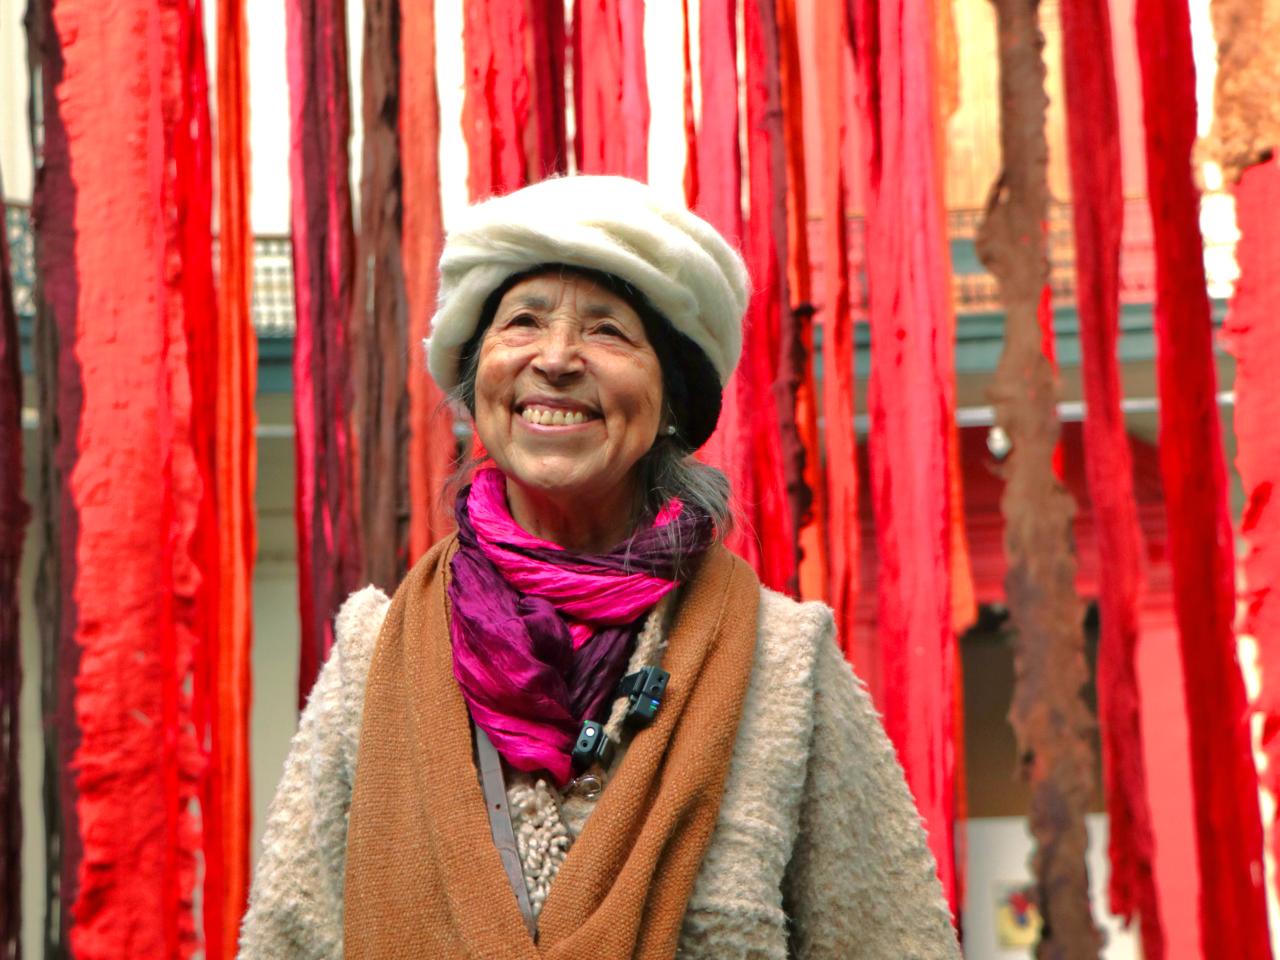 Una mujer mayor sonriendo con telas rojas colgando detrás de ella